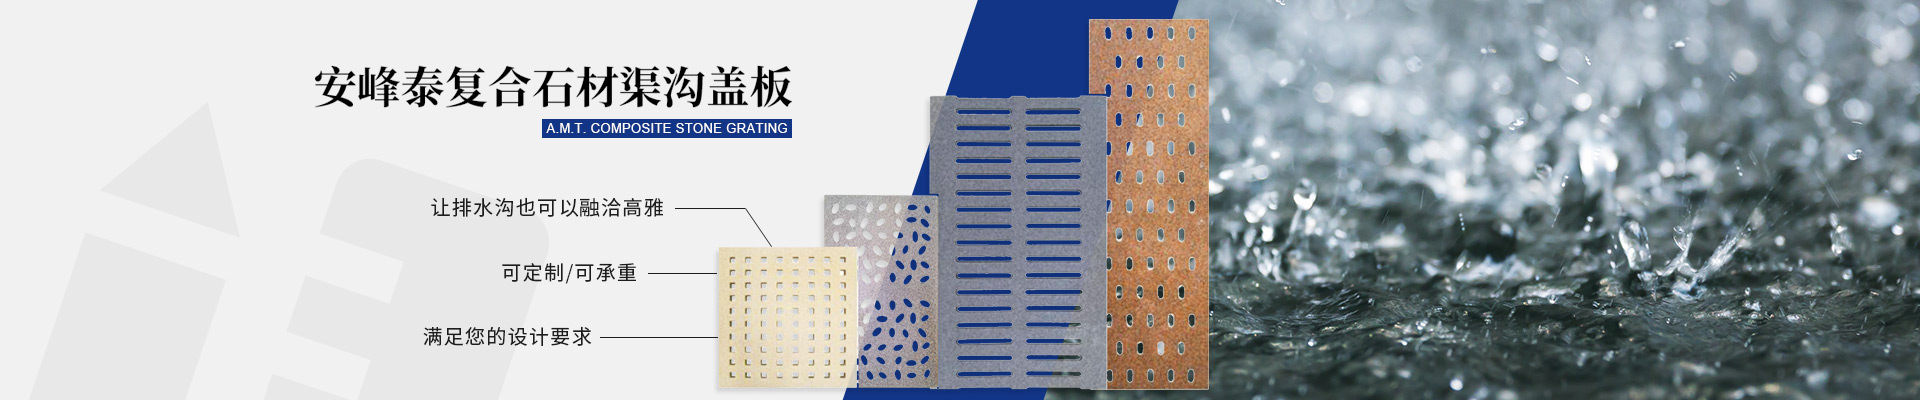 上海安峰泰新材料科技有限公司公司介紹